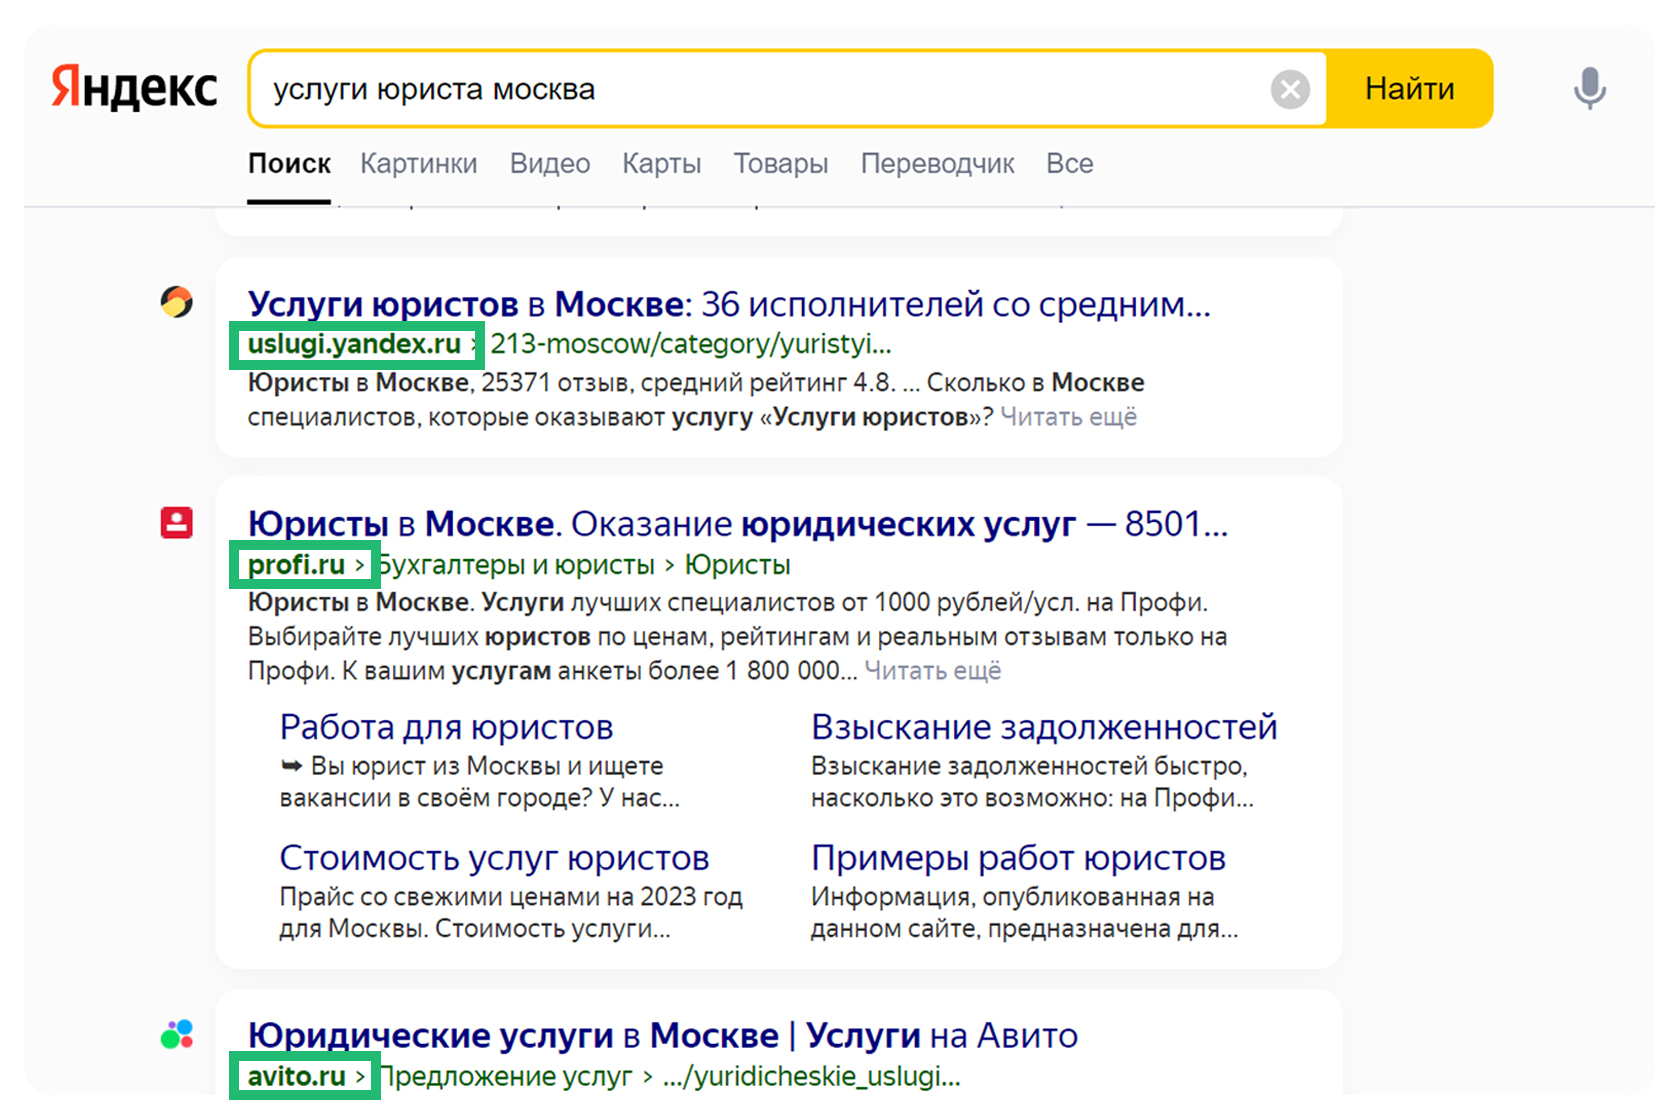 Пример выдачи объявлений сервисов Я.Услуги, Profi.ru, Аvito в первых позициях Яндекса